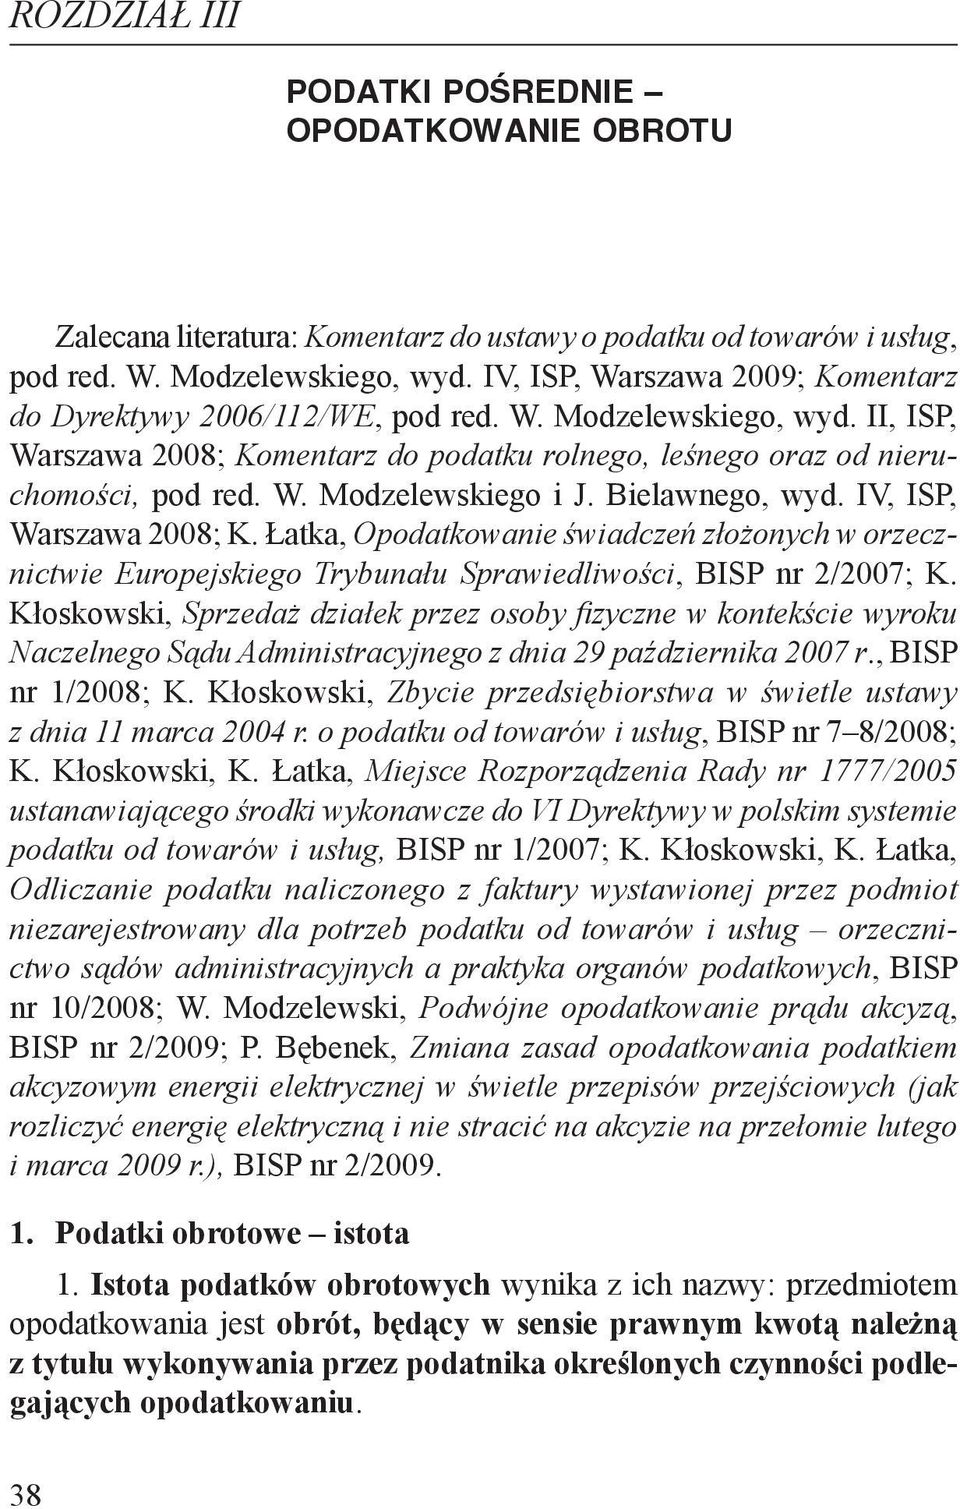 Bielawnego, wyd. IV, ISP, Warszawa 2008; K. Łatka, Opodatkowanie świadczeń złożonych w orzecznictwie Europejskiego Trybunału Sprawiedliwości, BISP nr 2/2007; K.